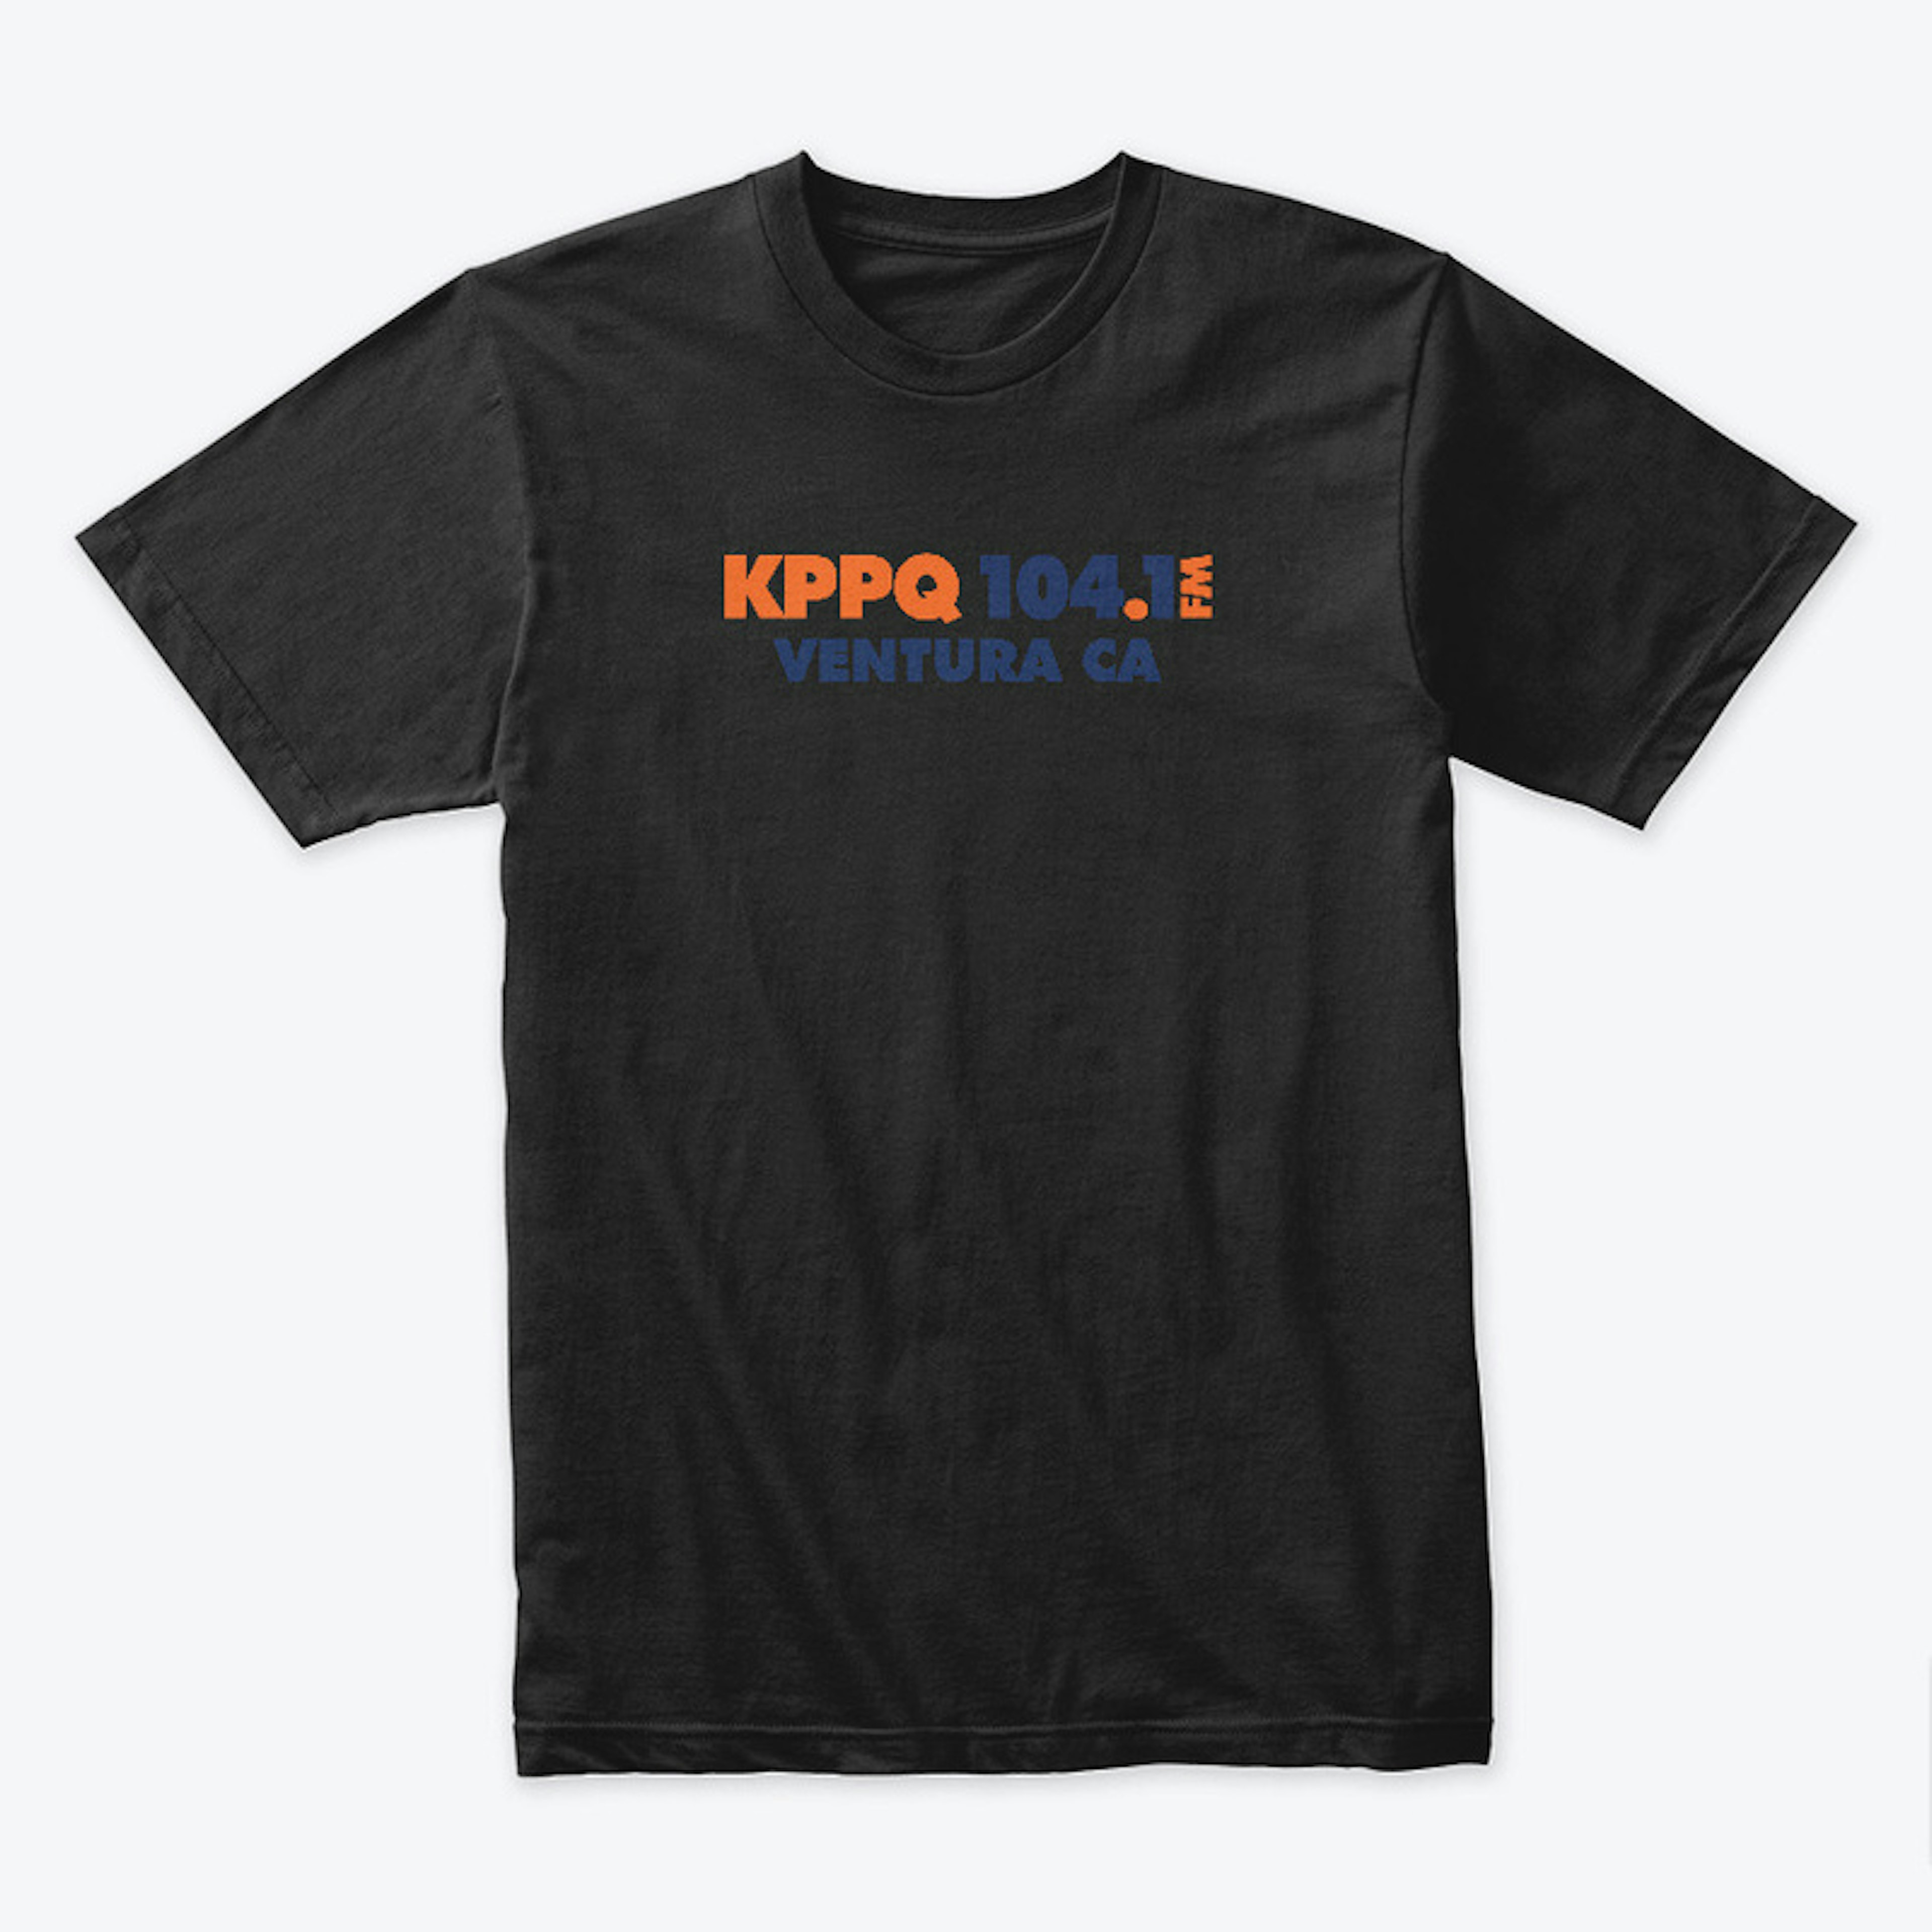 KPPQ Premium Tee